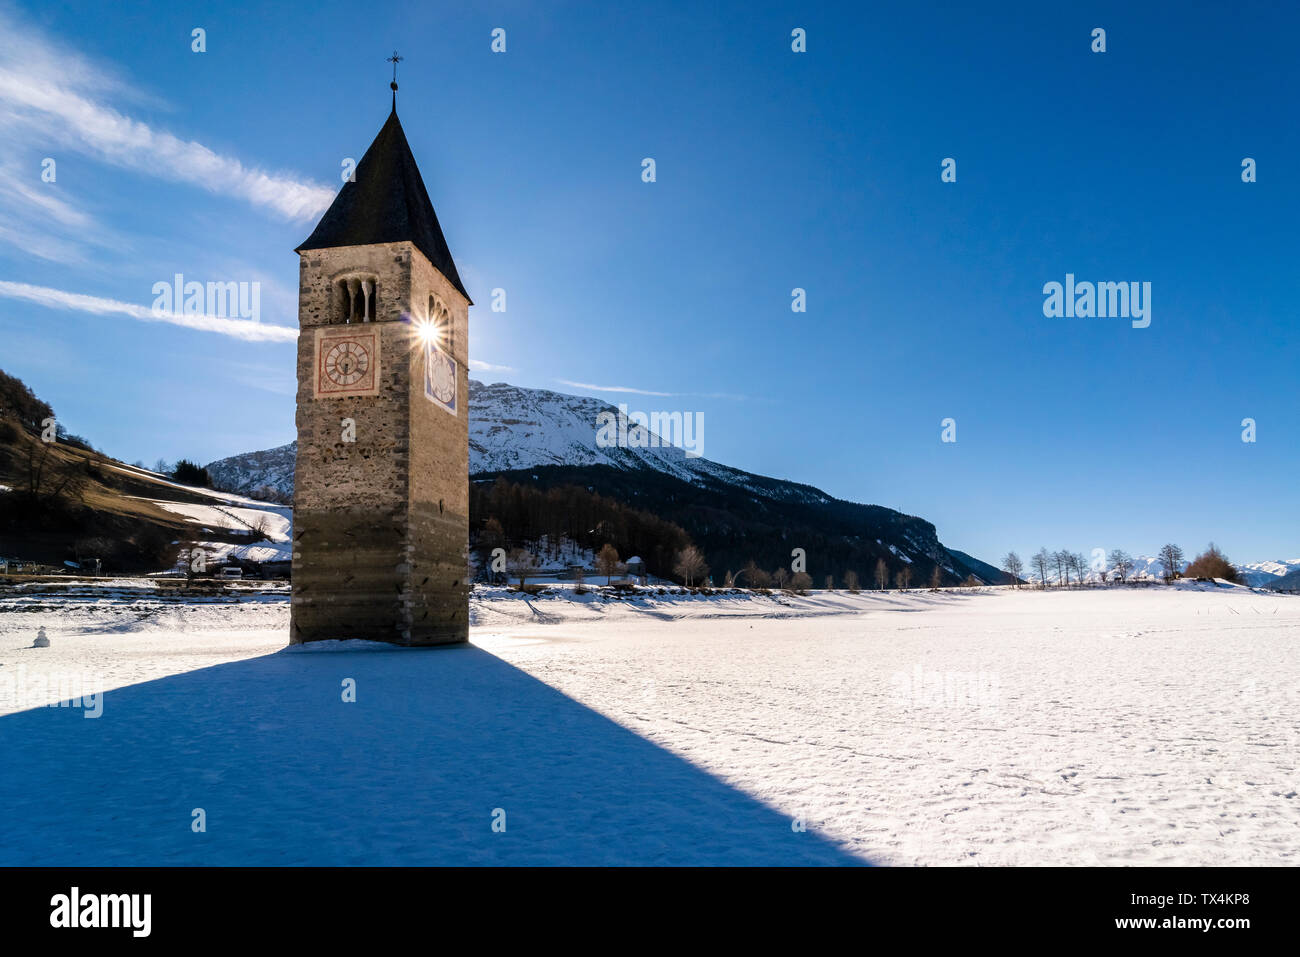 Italy, Venosta Valley, Sunken spire in frozen Lago di Resia in winter Stock Photo